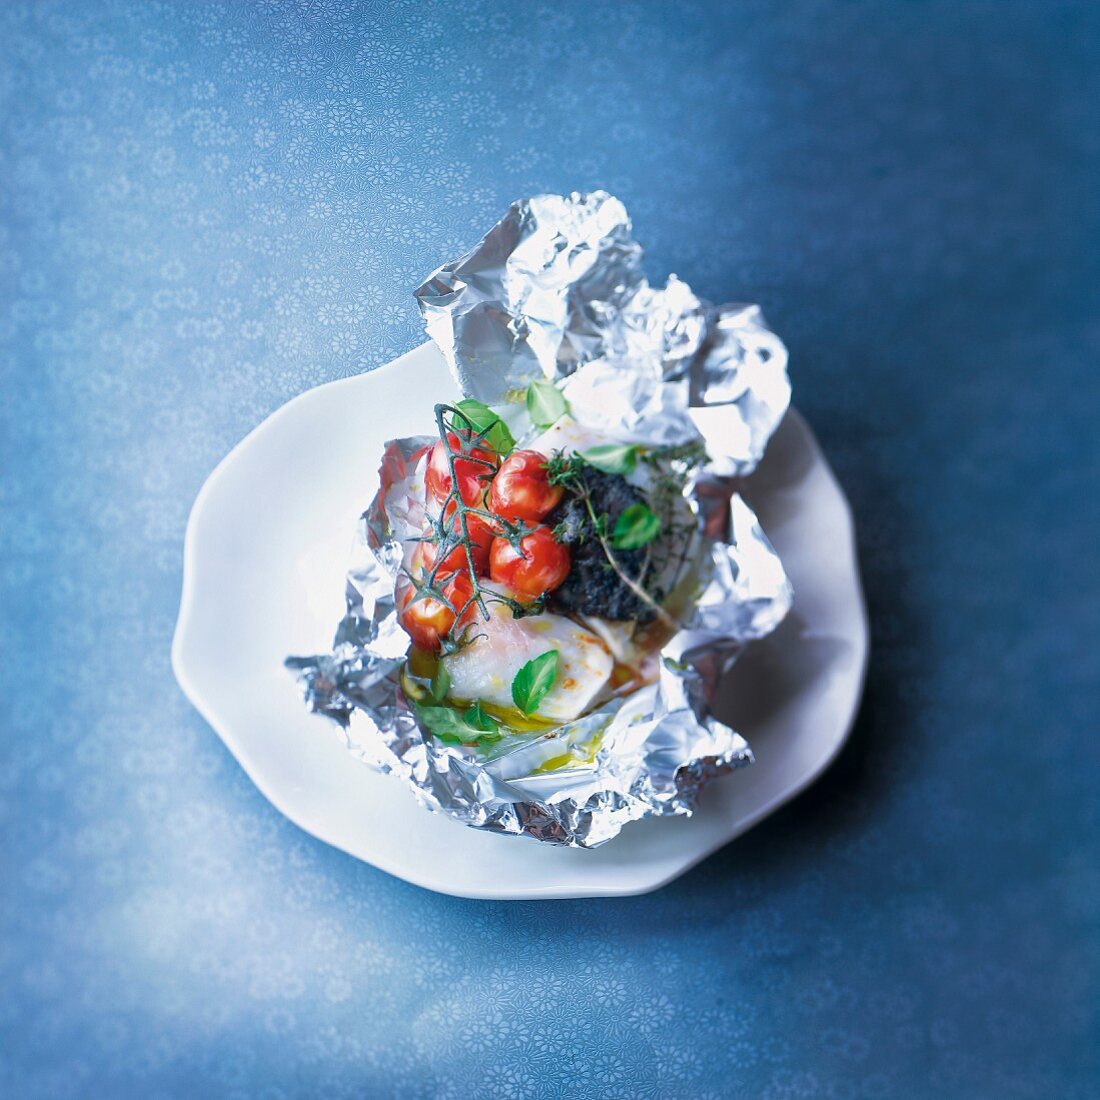 Cod cooked in aluminium foil